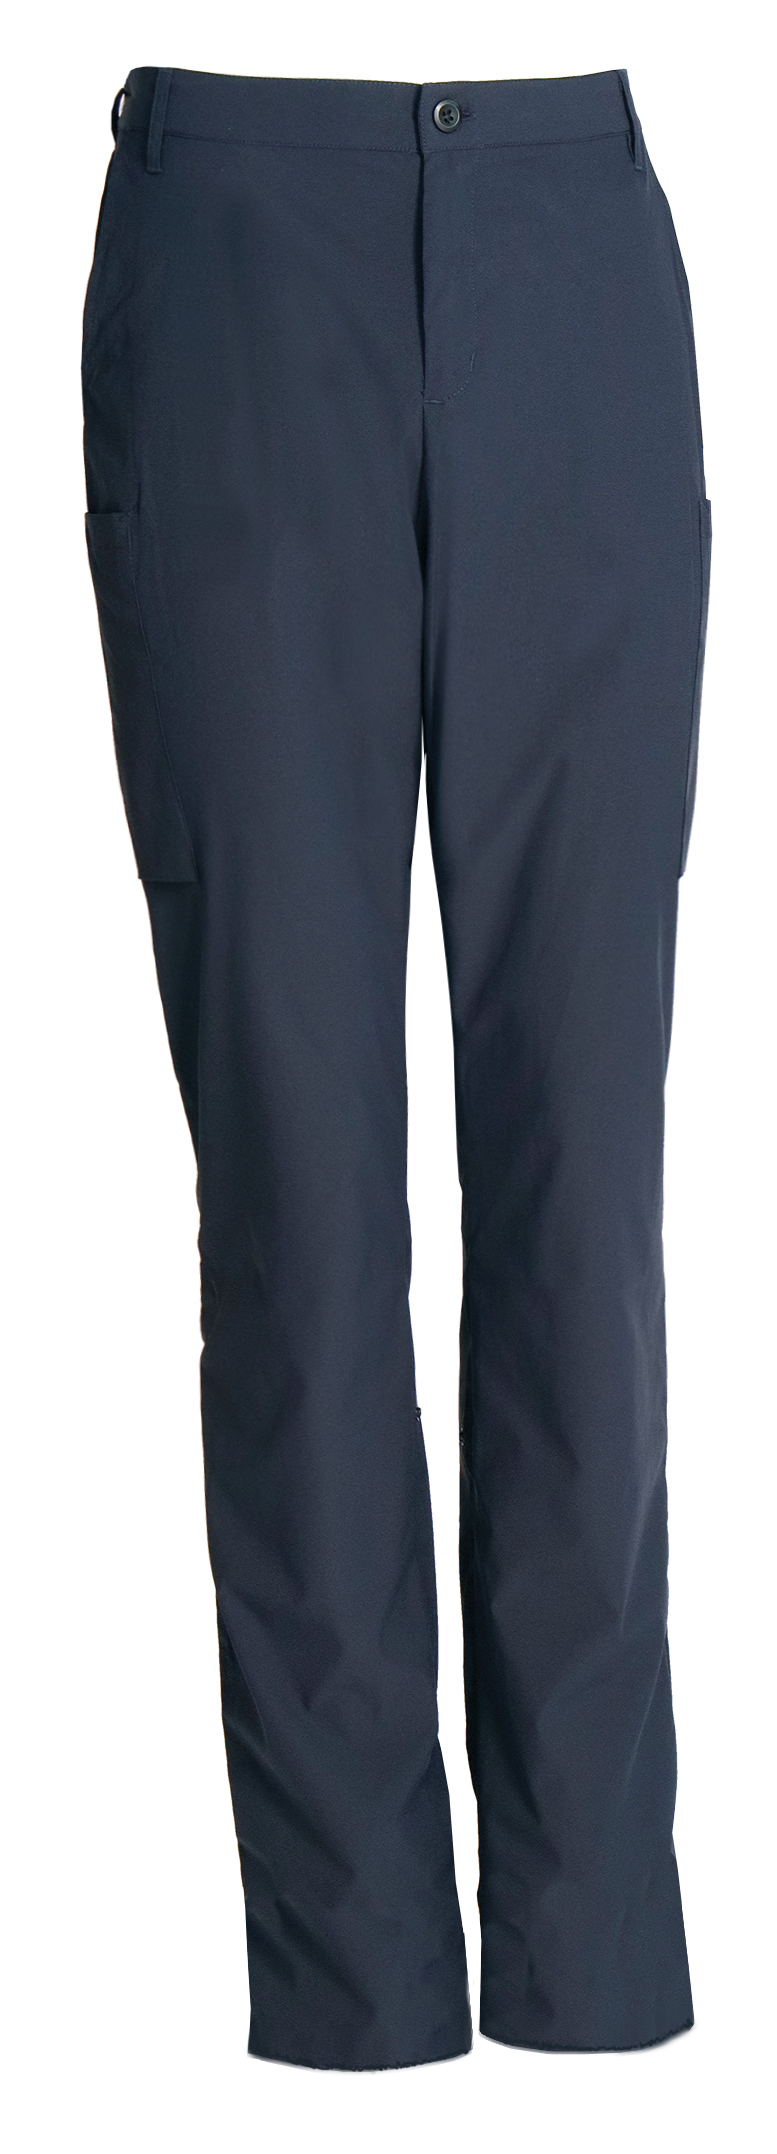 Navy Stretch bukser, længde 92 cm, uopsømmet, Sporty T800 (1051379)